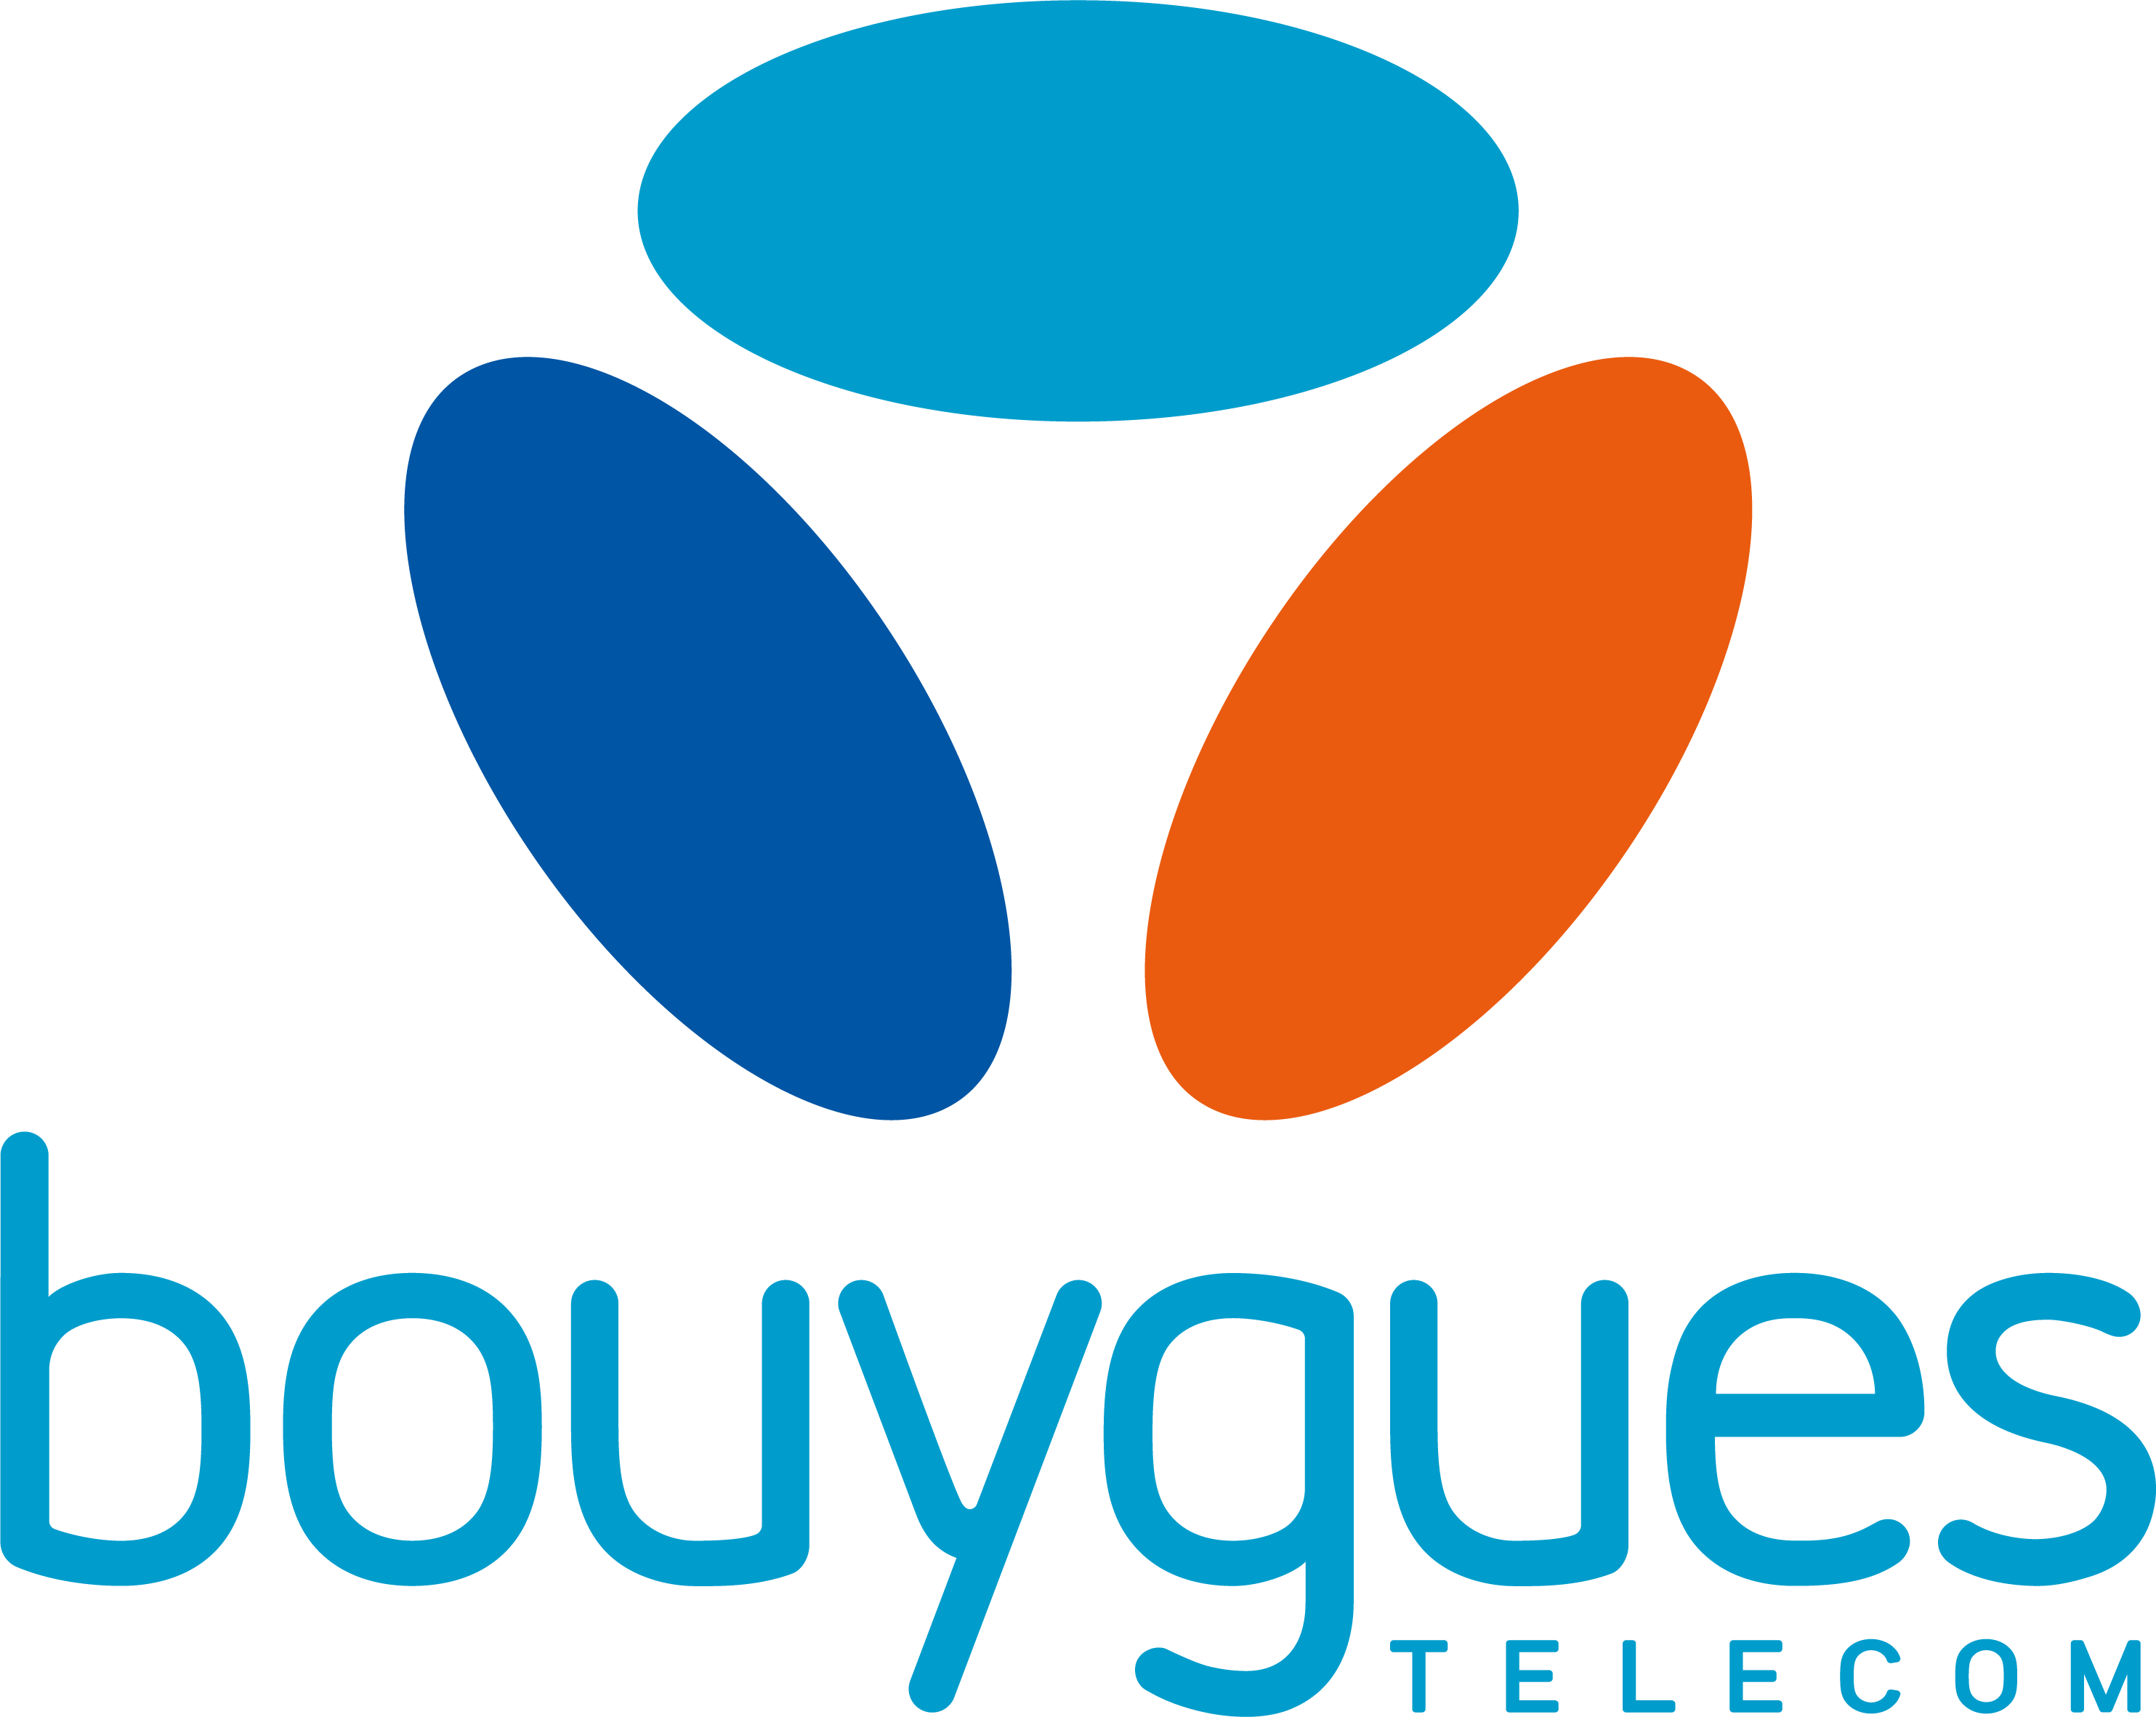 Bouygues Telecomlogo